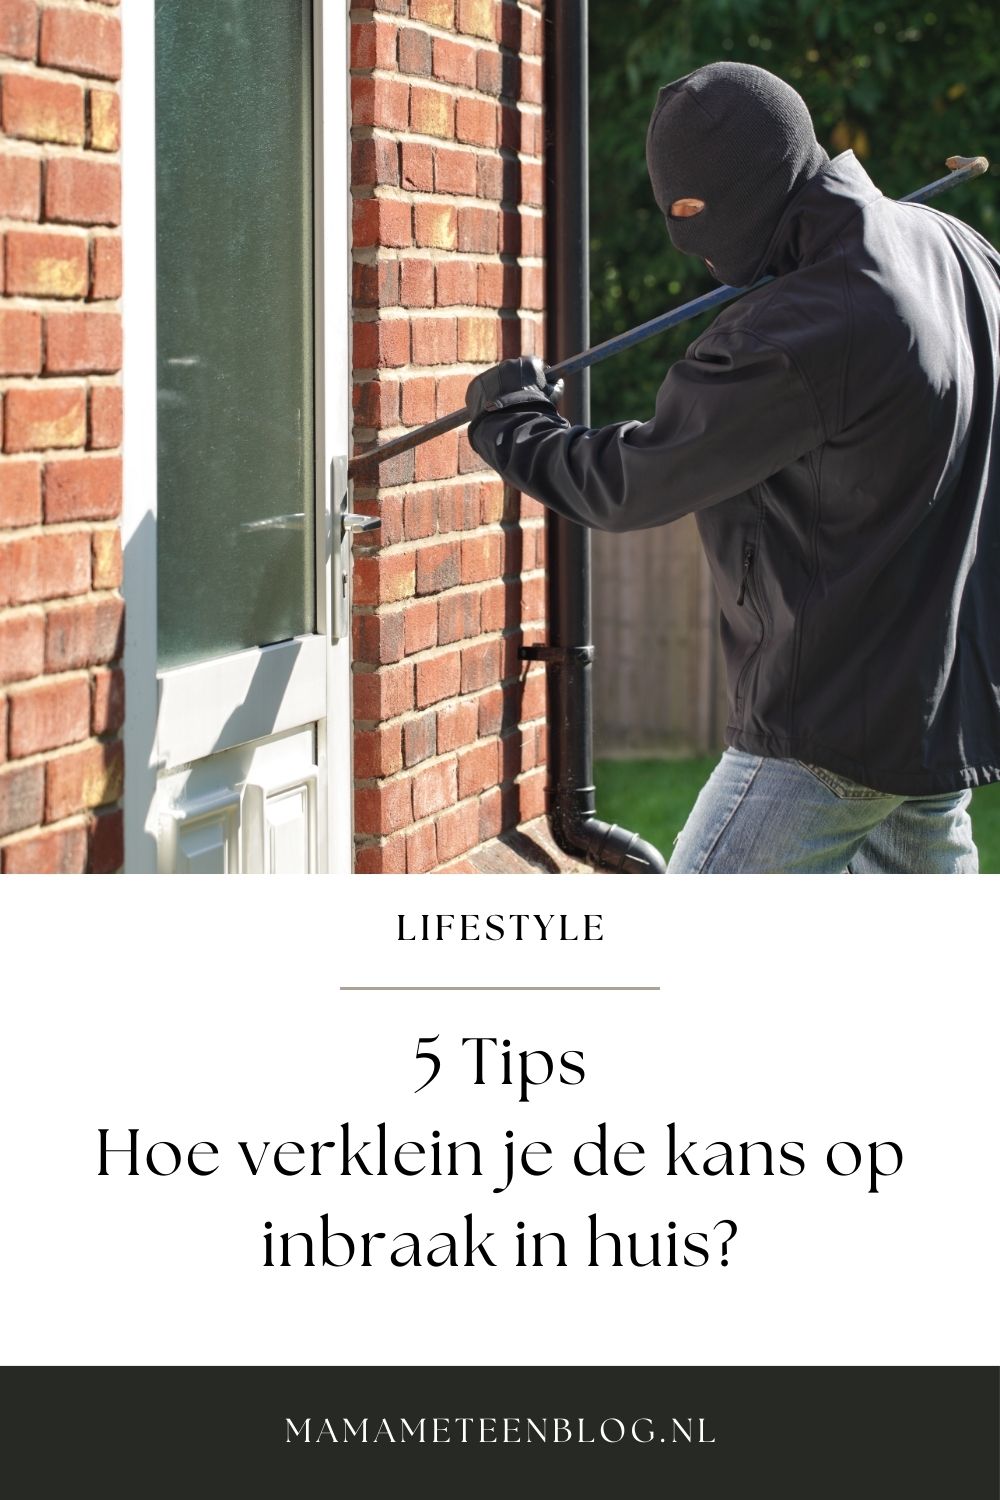 Tips kans op inbraak in huis verkleinen mamameteenblog.nl